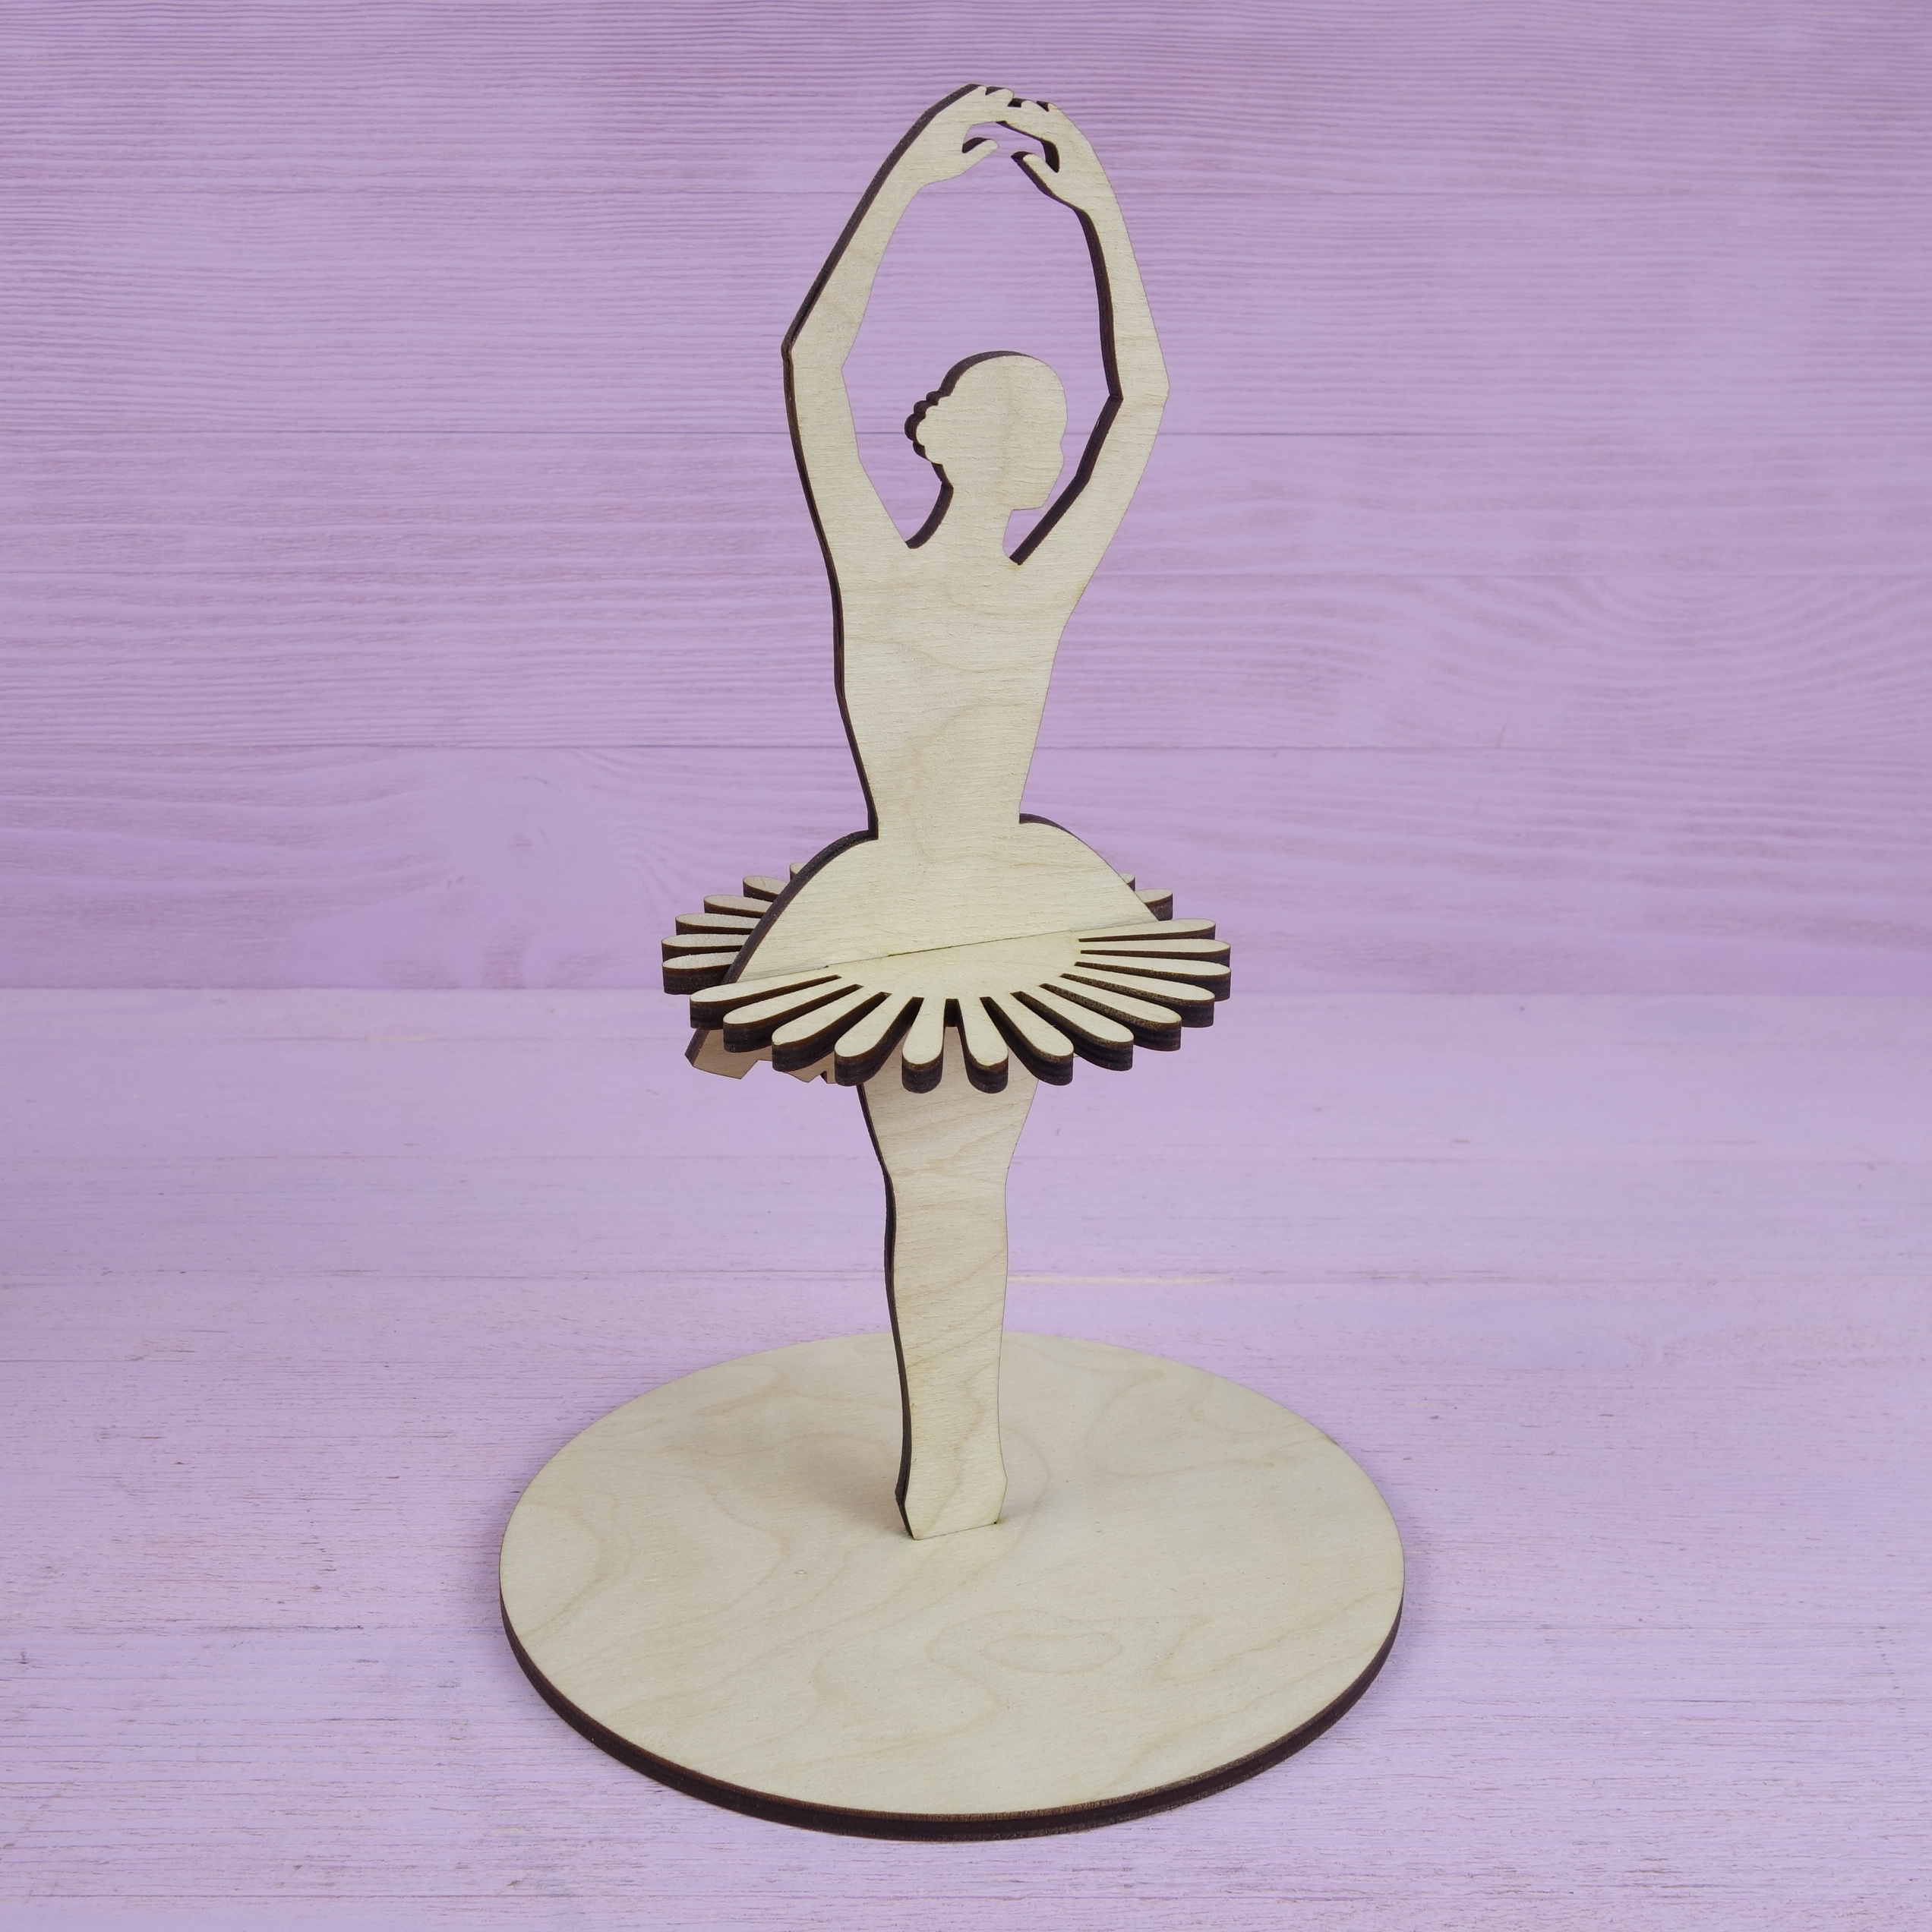 Снежинка-балерина из бумаги: шаблоны для вырезания | Активная мама